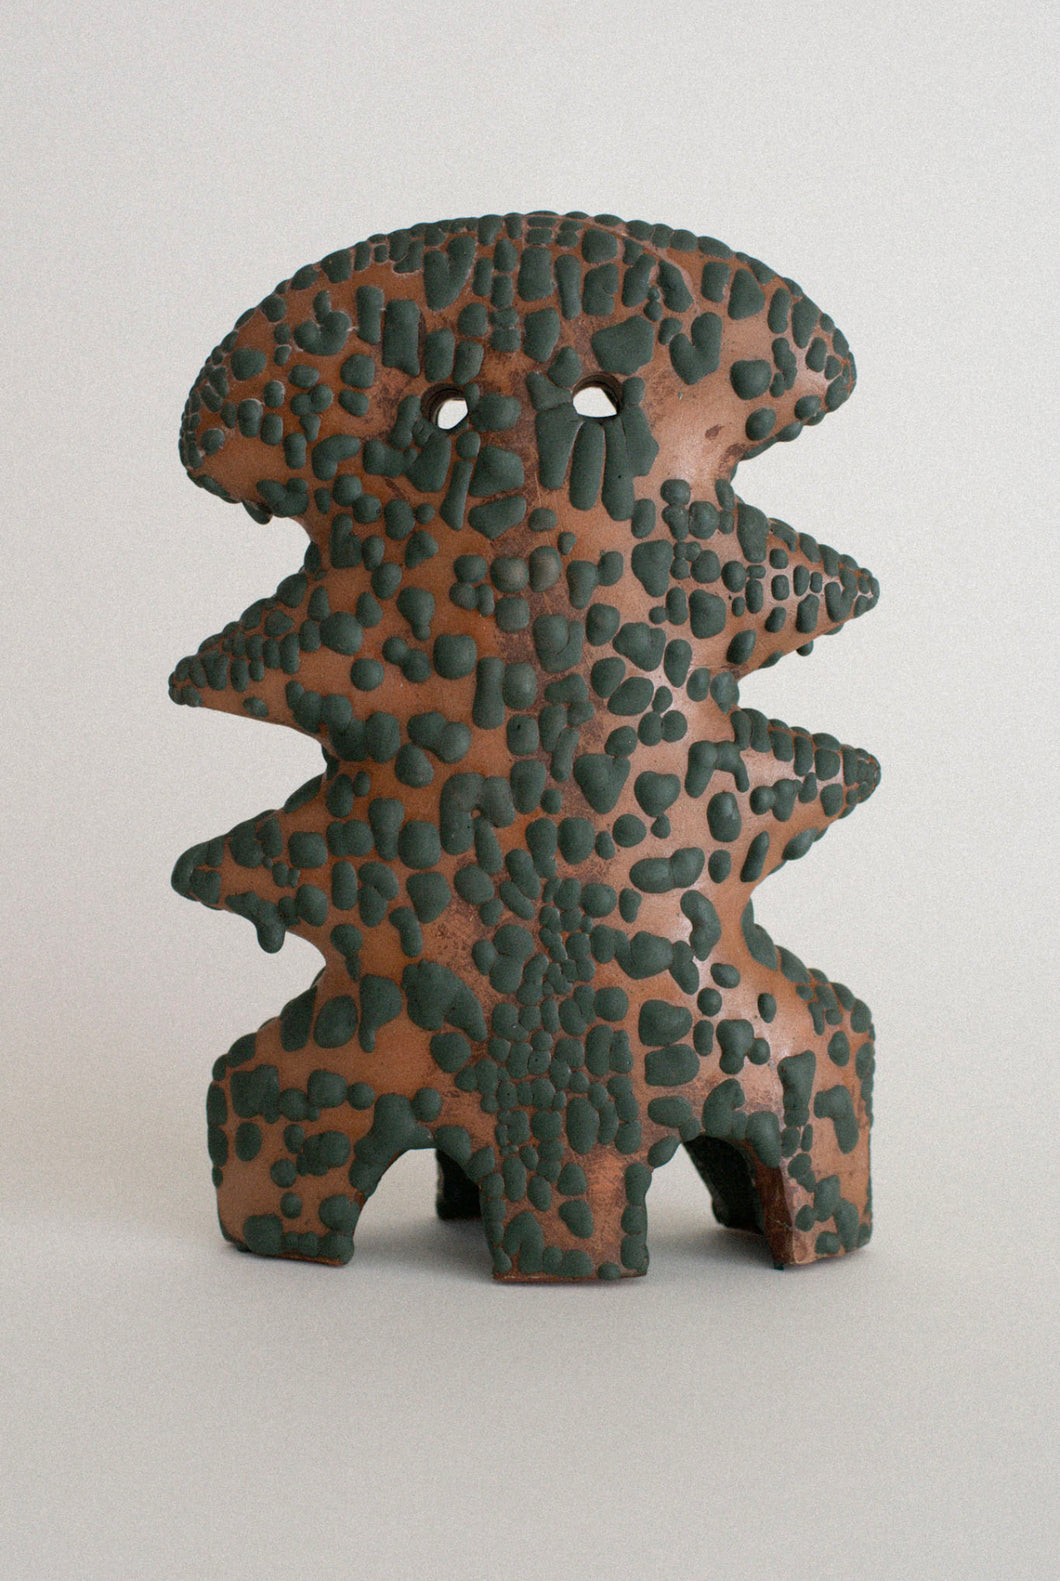 Textured Ceramic Sculpture